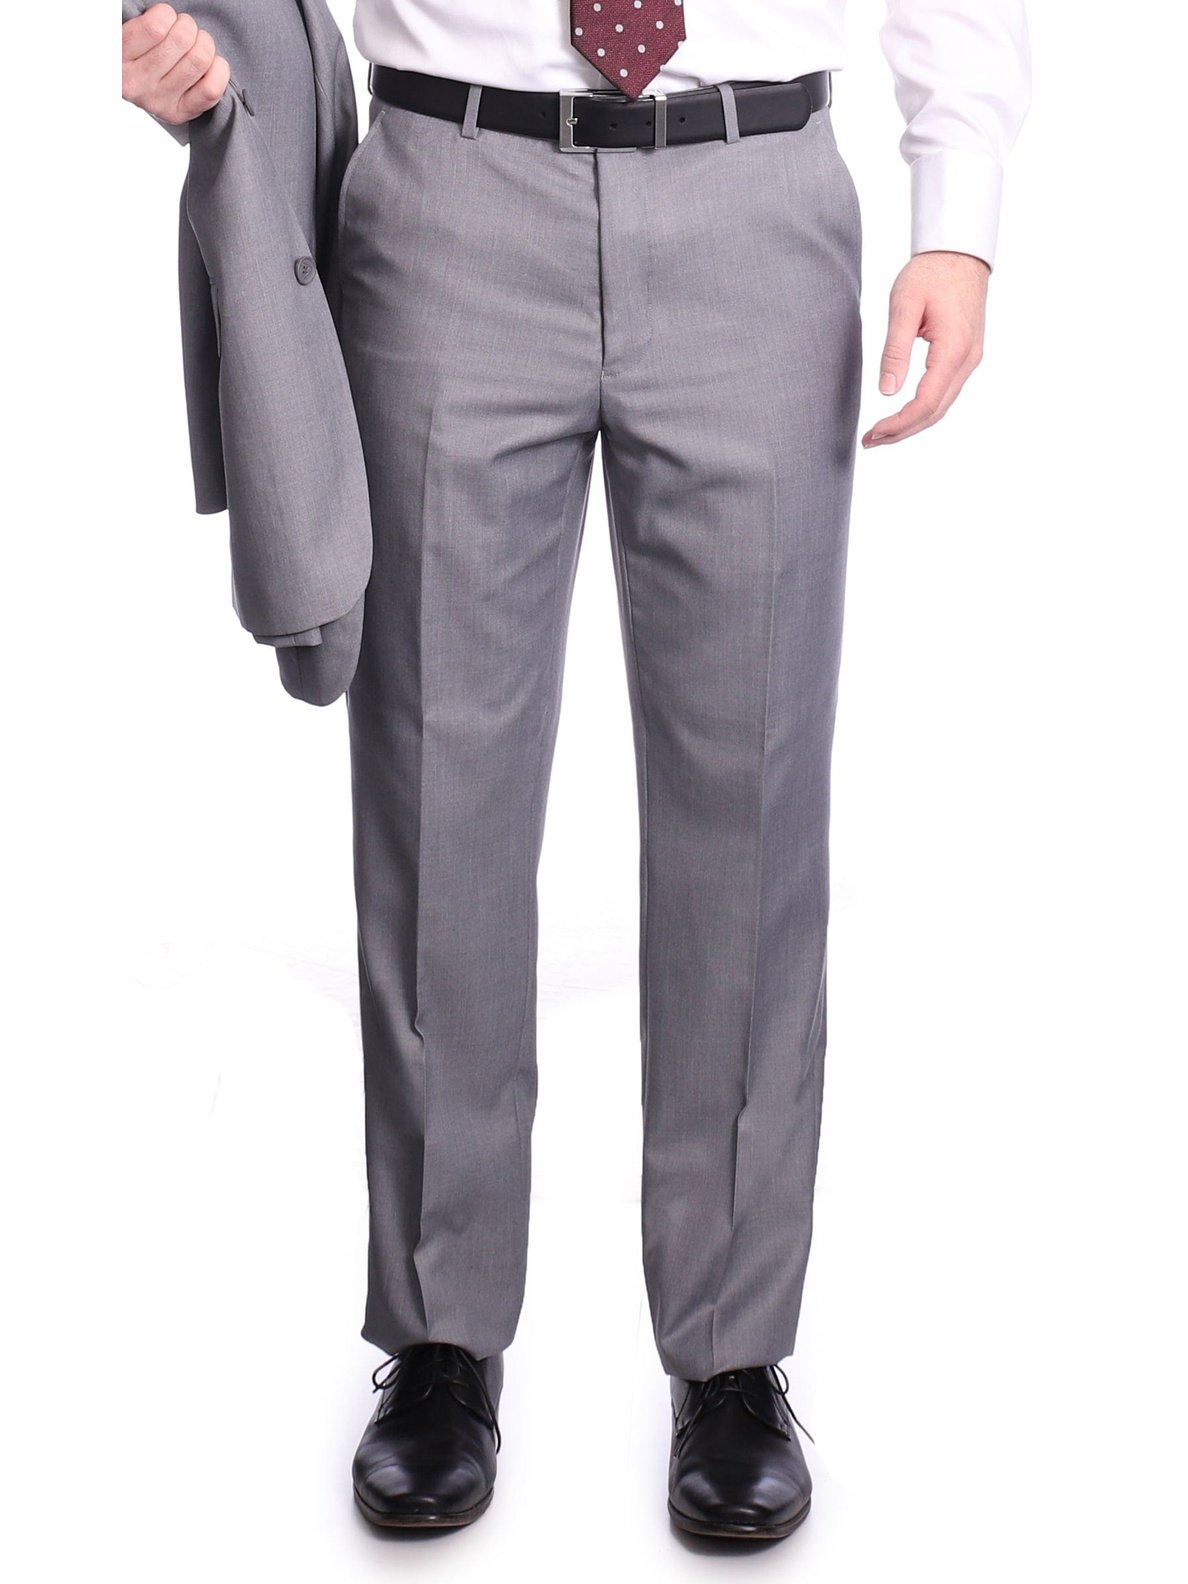 Raphael TWO PIECE SUITS Raphael Men&#39;s Slim Fit Light Gray Wool-touch Two Button 2 Piece Suit